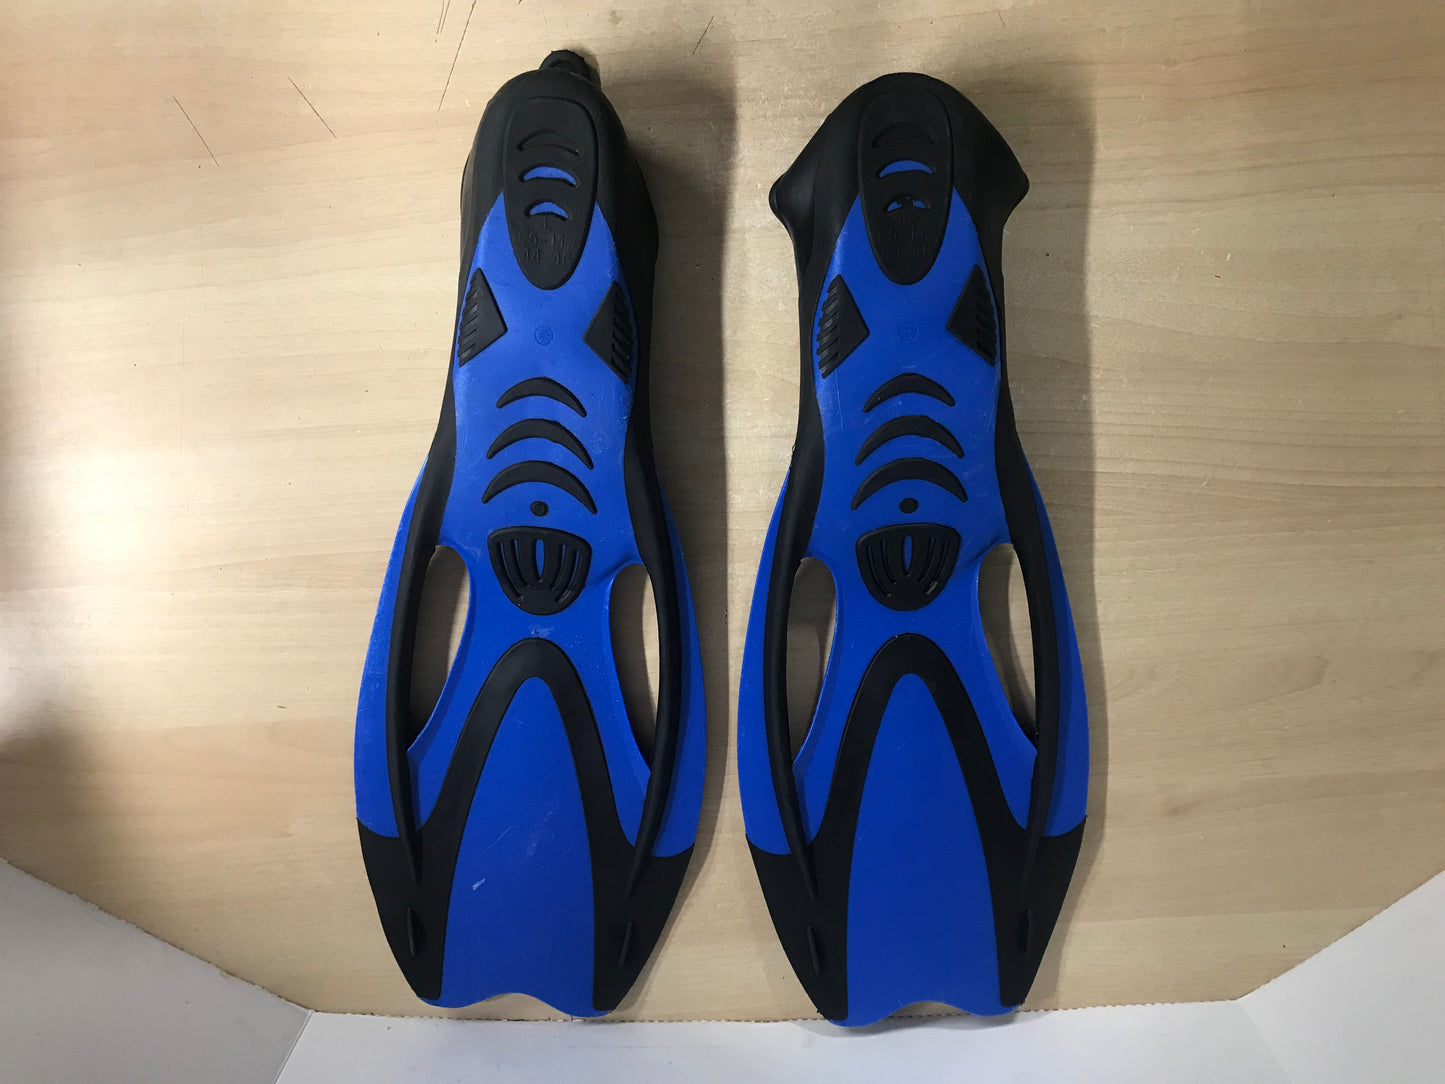 Snorkel Dive Fins Men's Shoe Size 9.5-11 Aqua Lung Proflex Blue Black Excellent